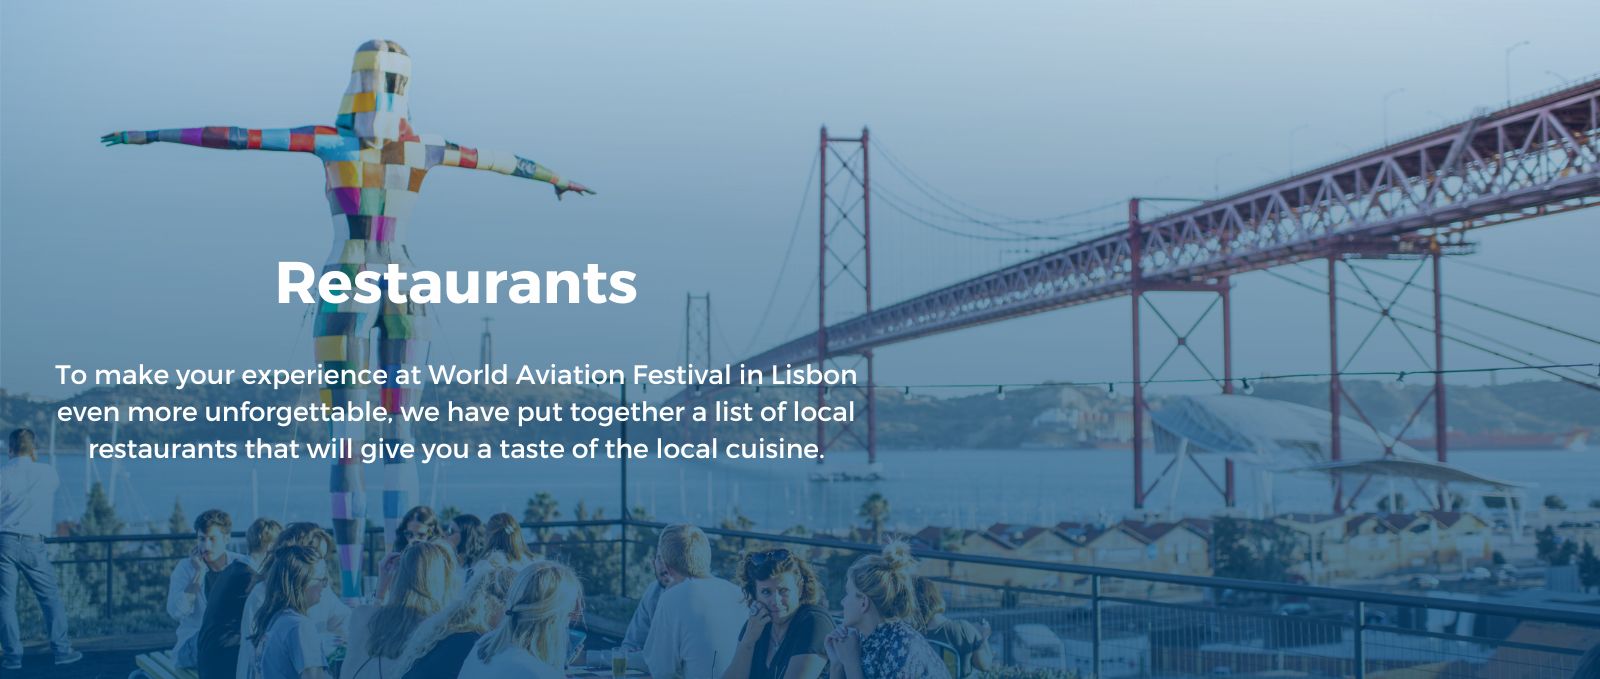 World Aviation Festival Lisbon - restaurants in Lisbon